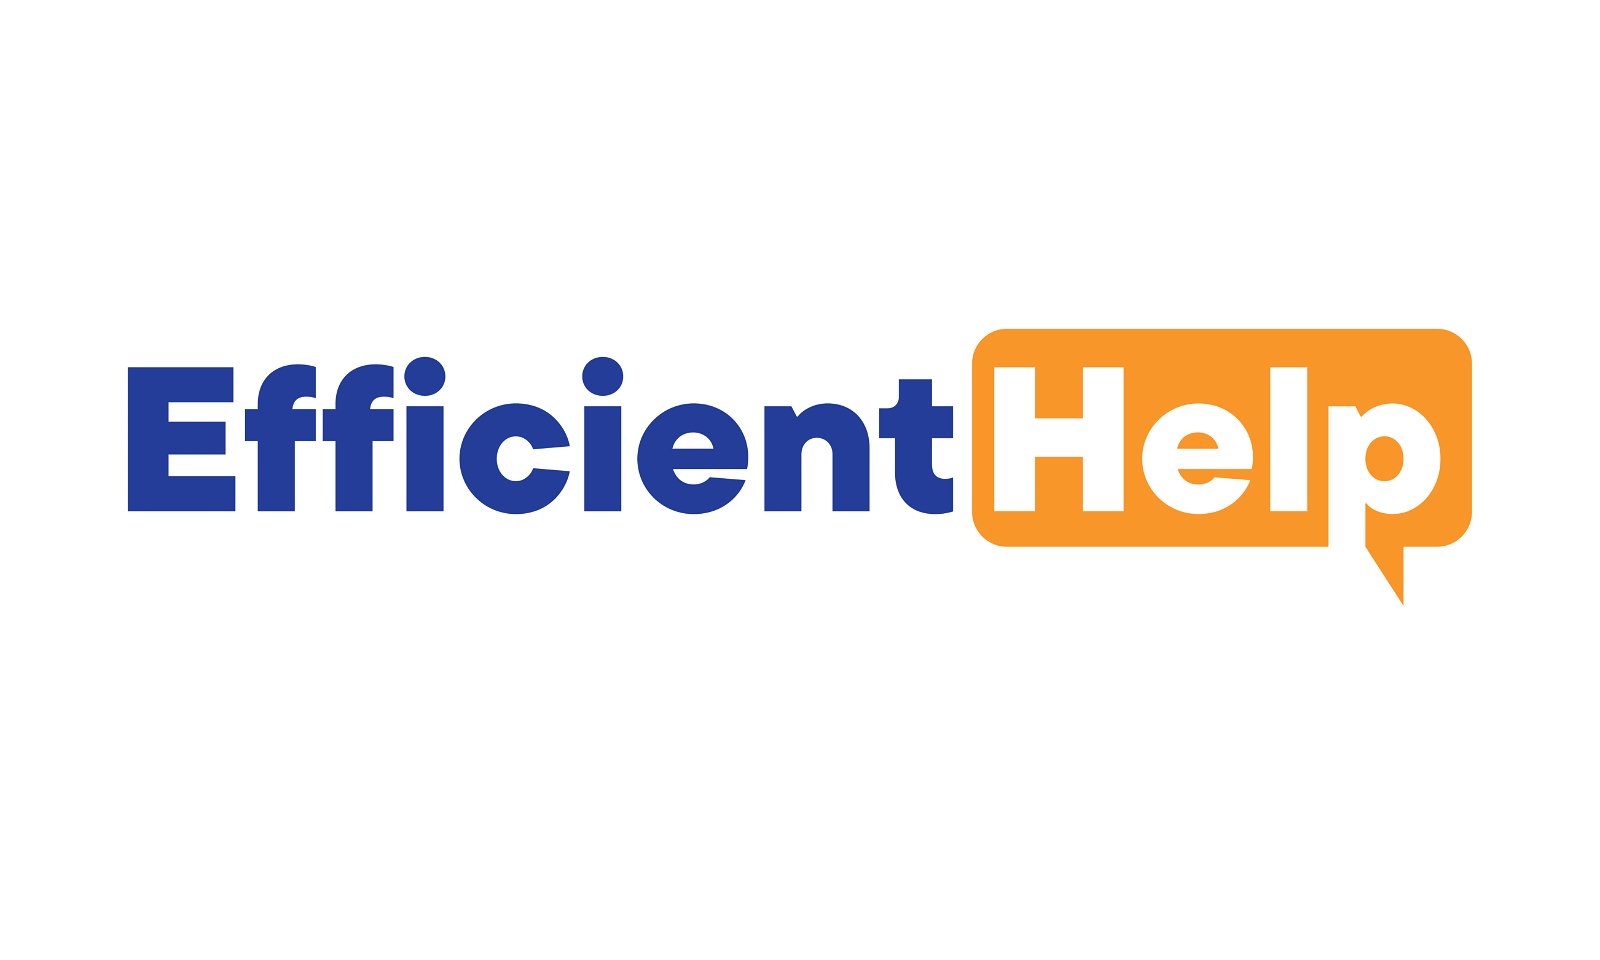 EfficientHelp.com - Creative brandable domain for sale